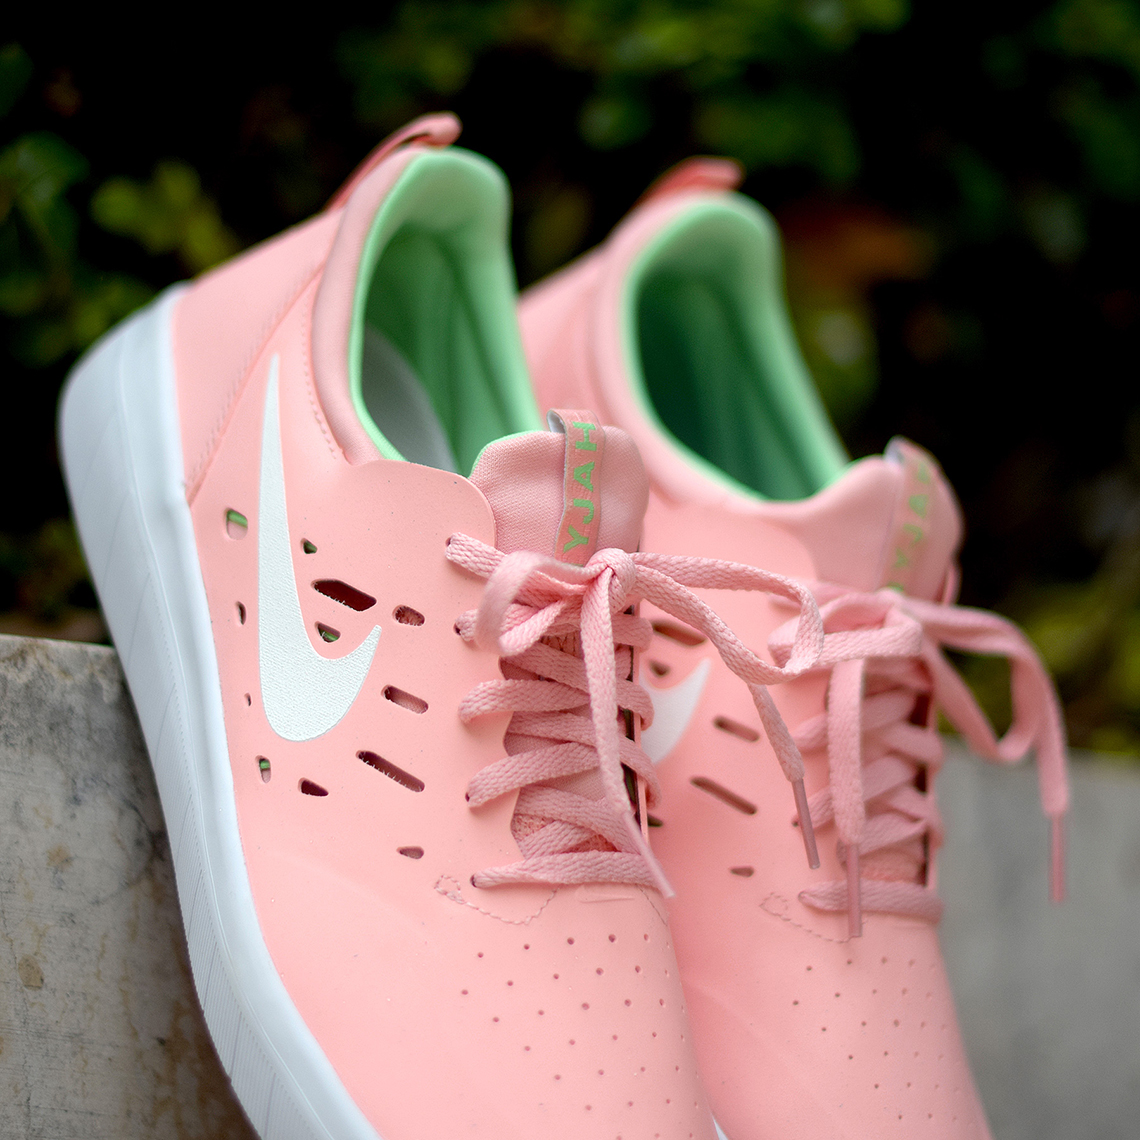 nyjah huston pink shoes